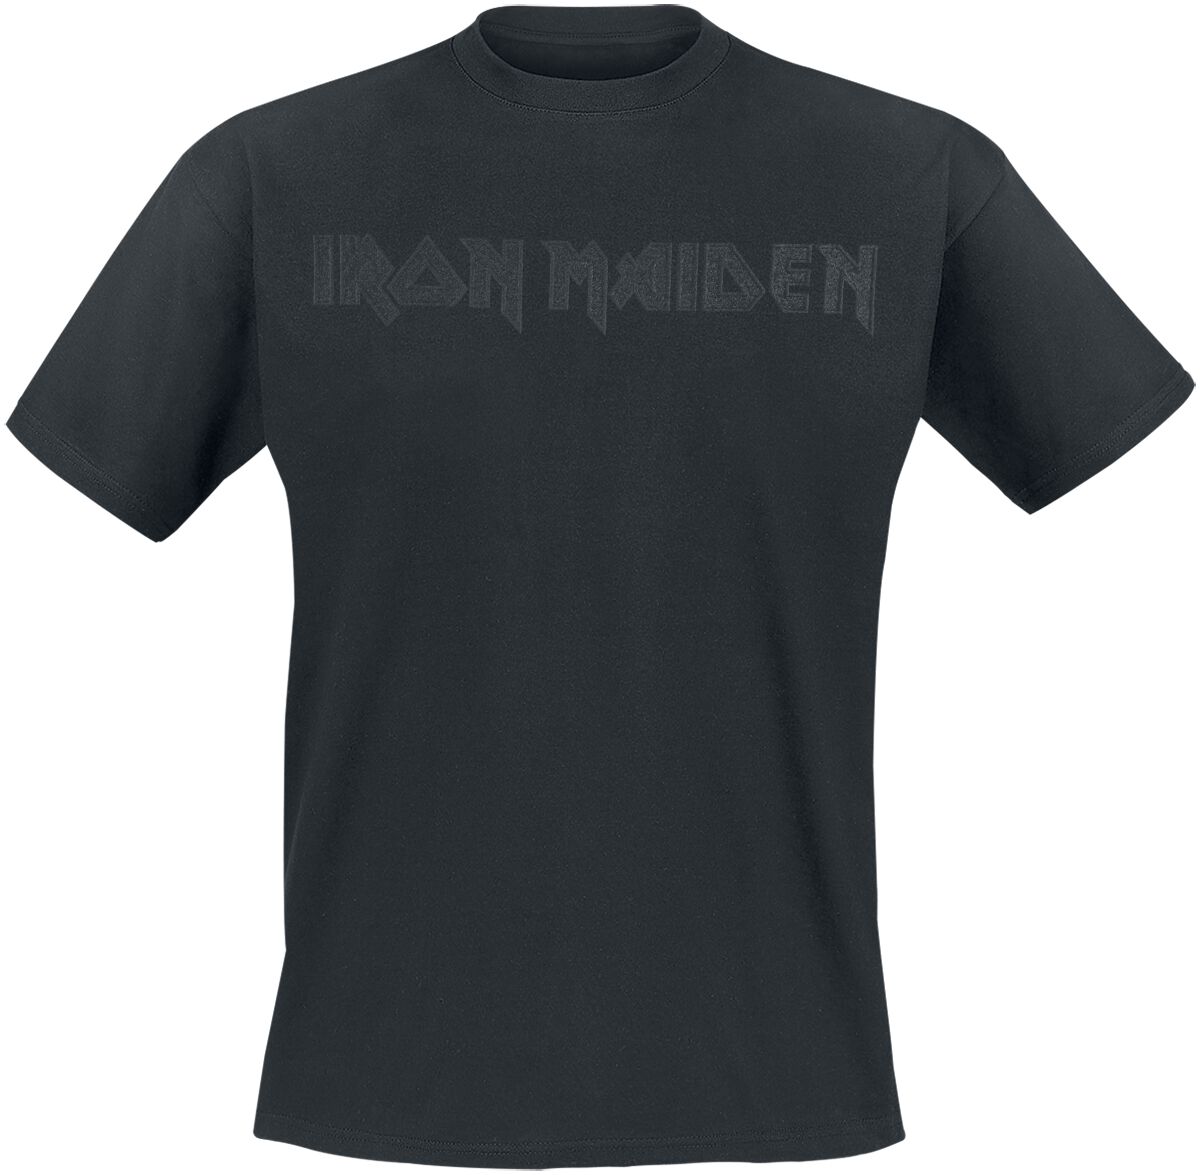 Iron Maiden T-Shirt - Black On Black Logo - S bis 4XL - für Männer - Größe 4XL - schwarz  - Lizenziertes Merchandise!